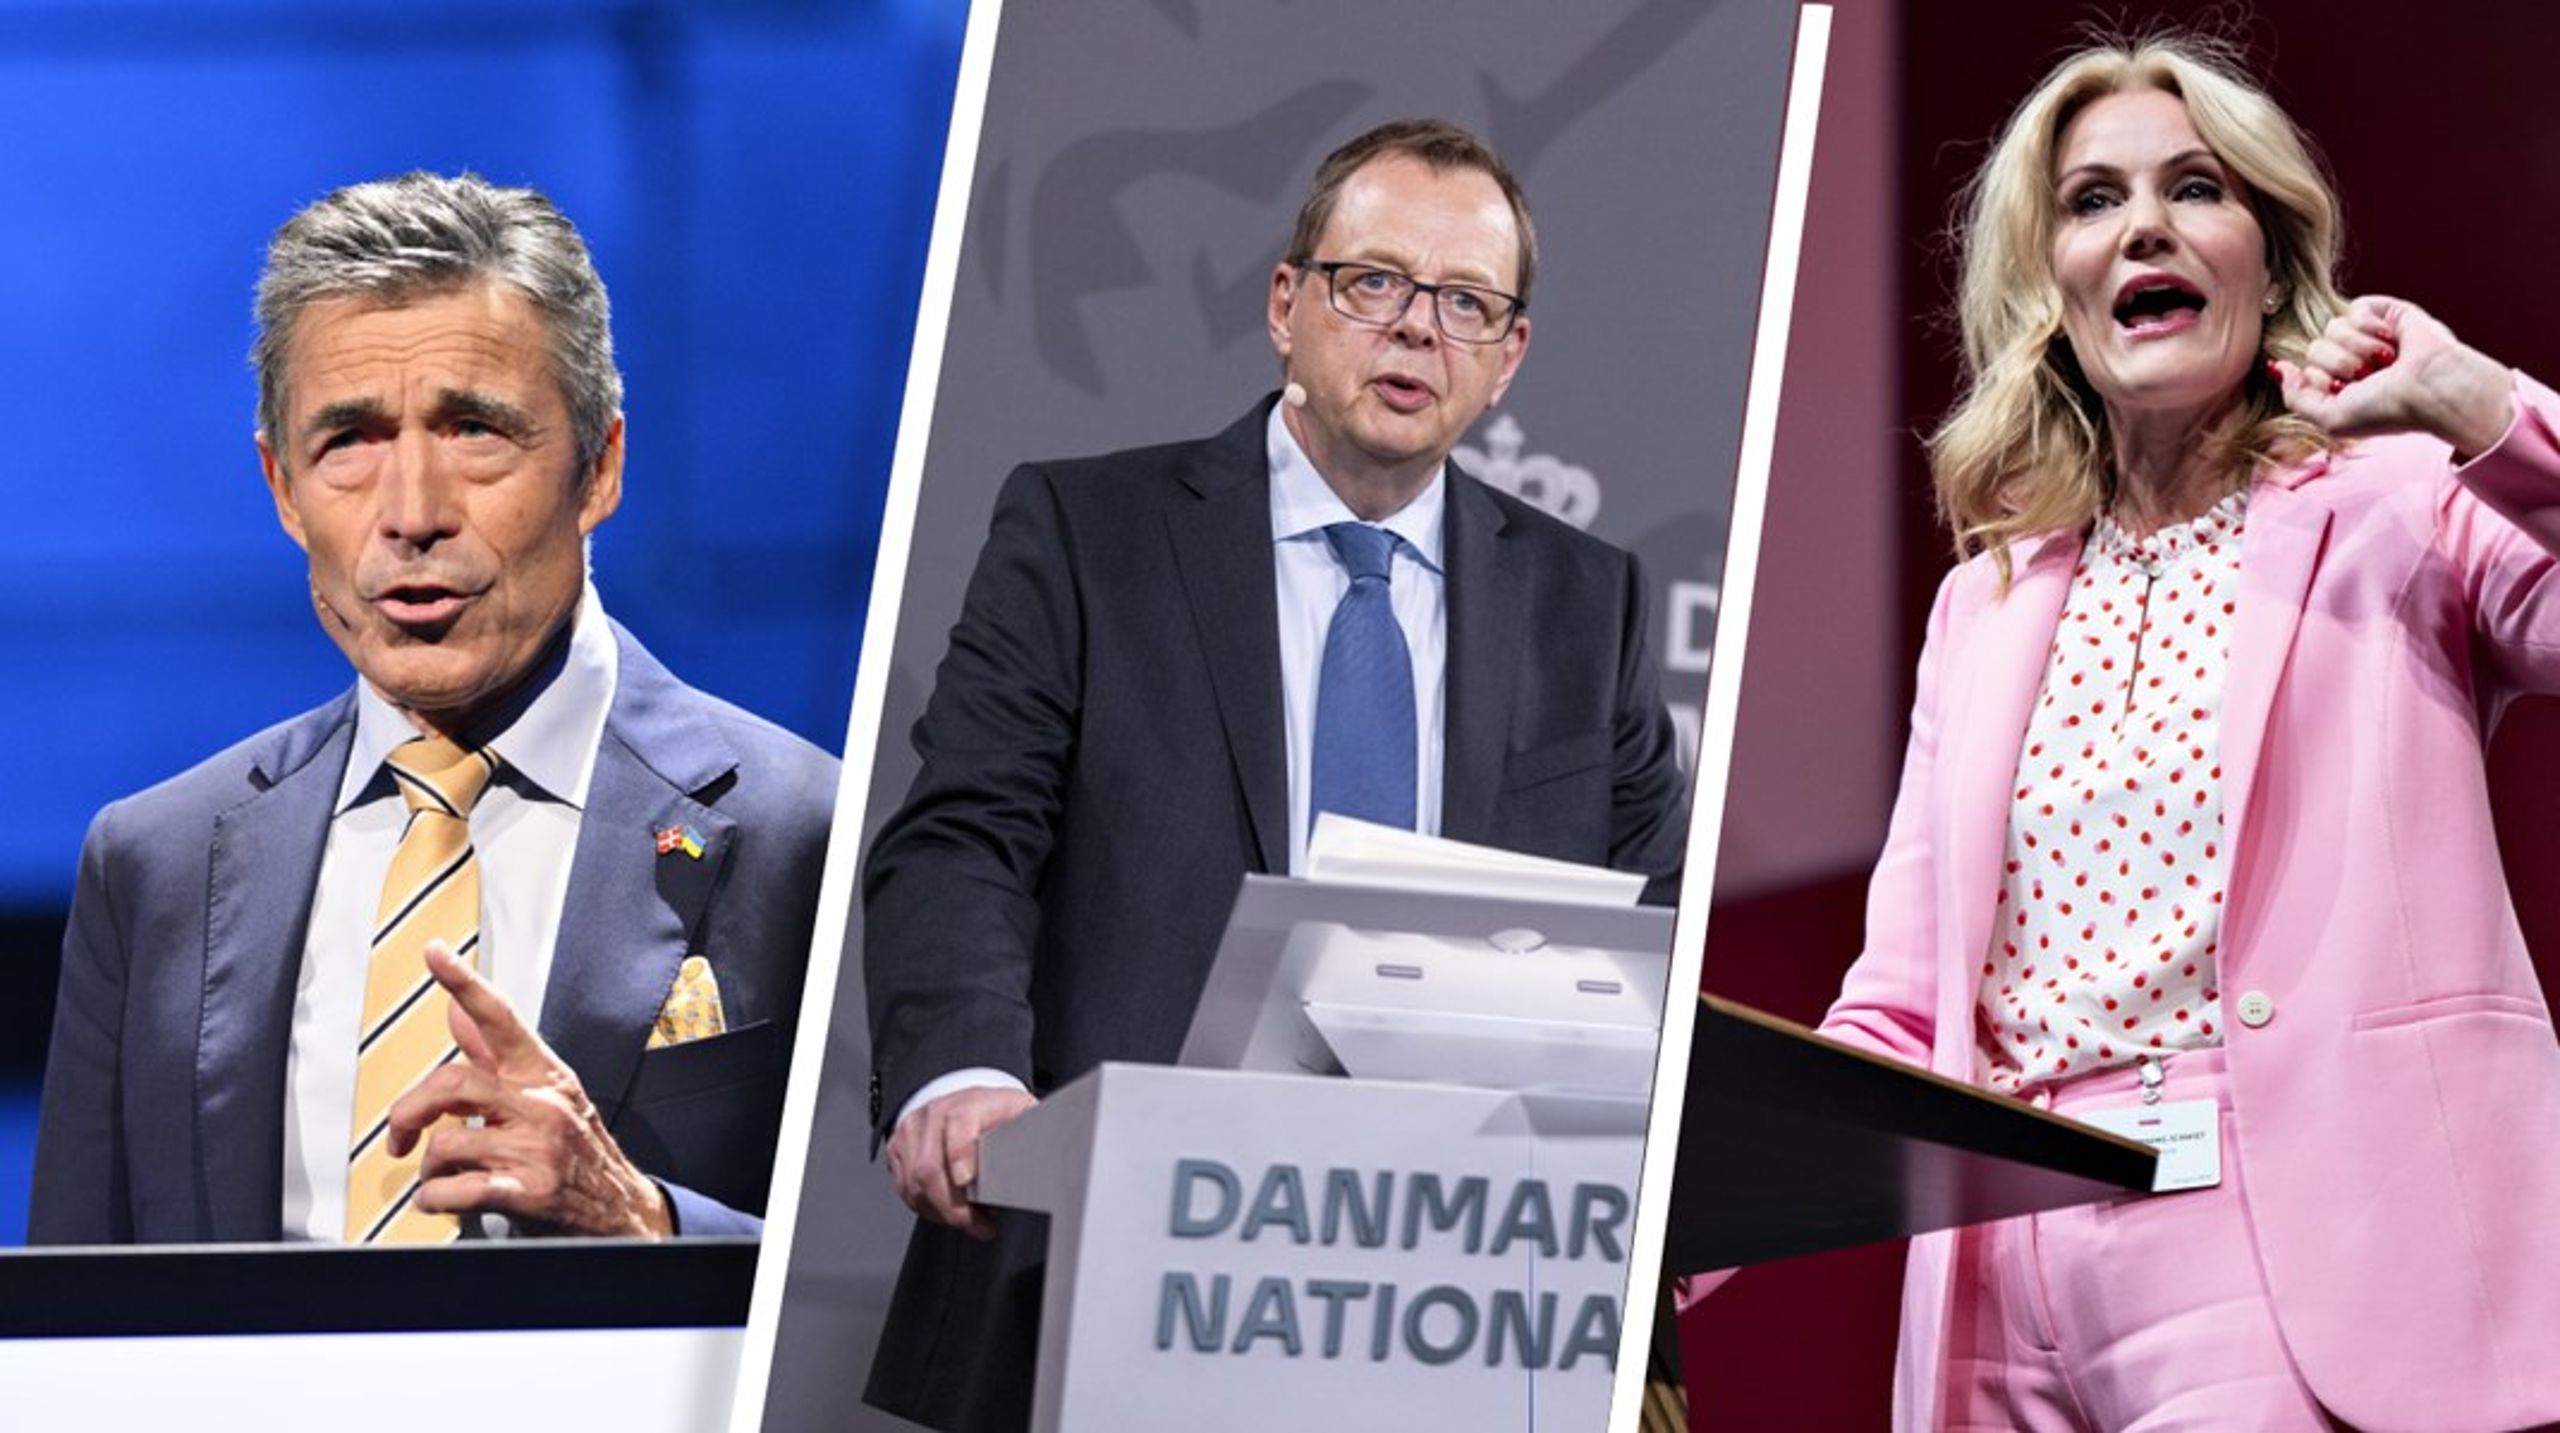 Anders Fogh Rasmussen, Christian Kettel Thomsen og Helle Thorning-Schmidt skal alle afhøres af Undersøgeleskommissionen om Skat i løbet af de kommende uger.&nbsp;